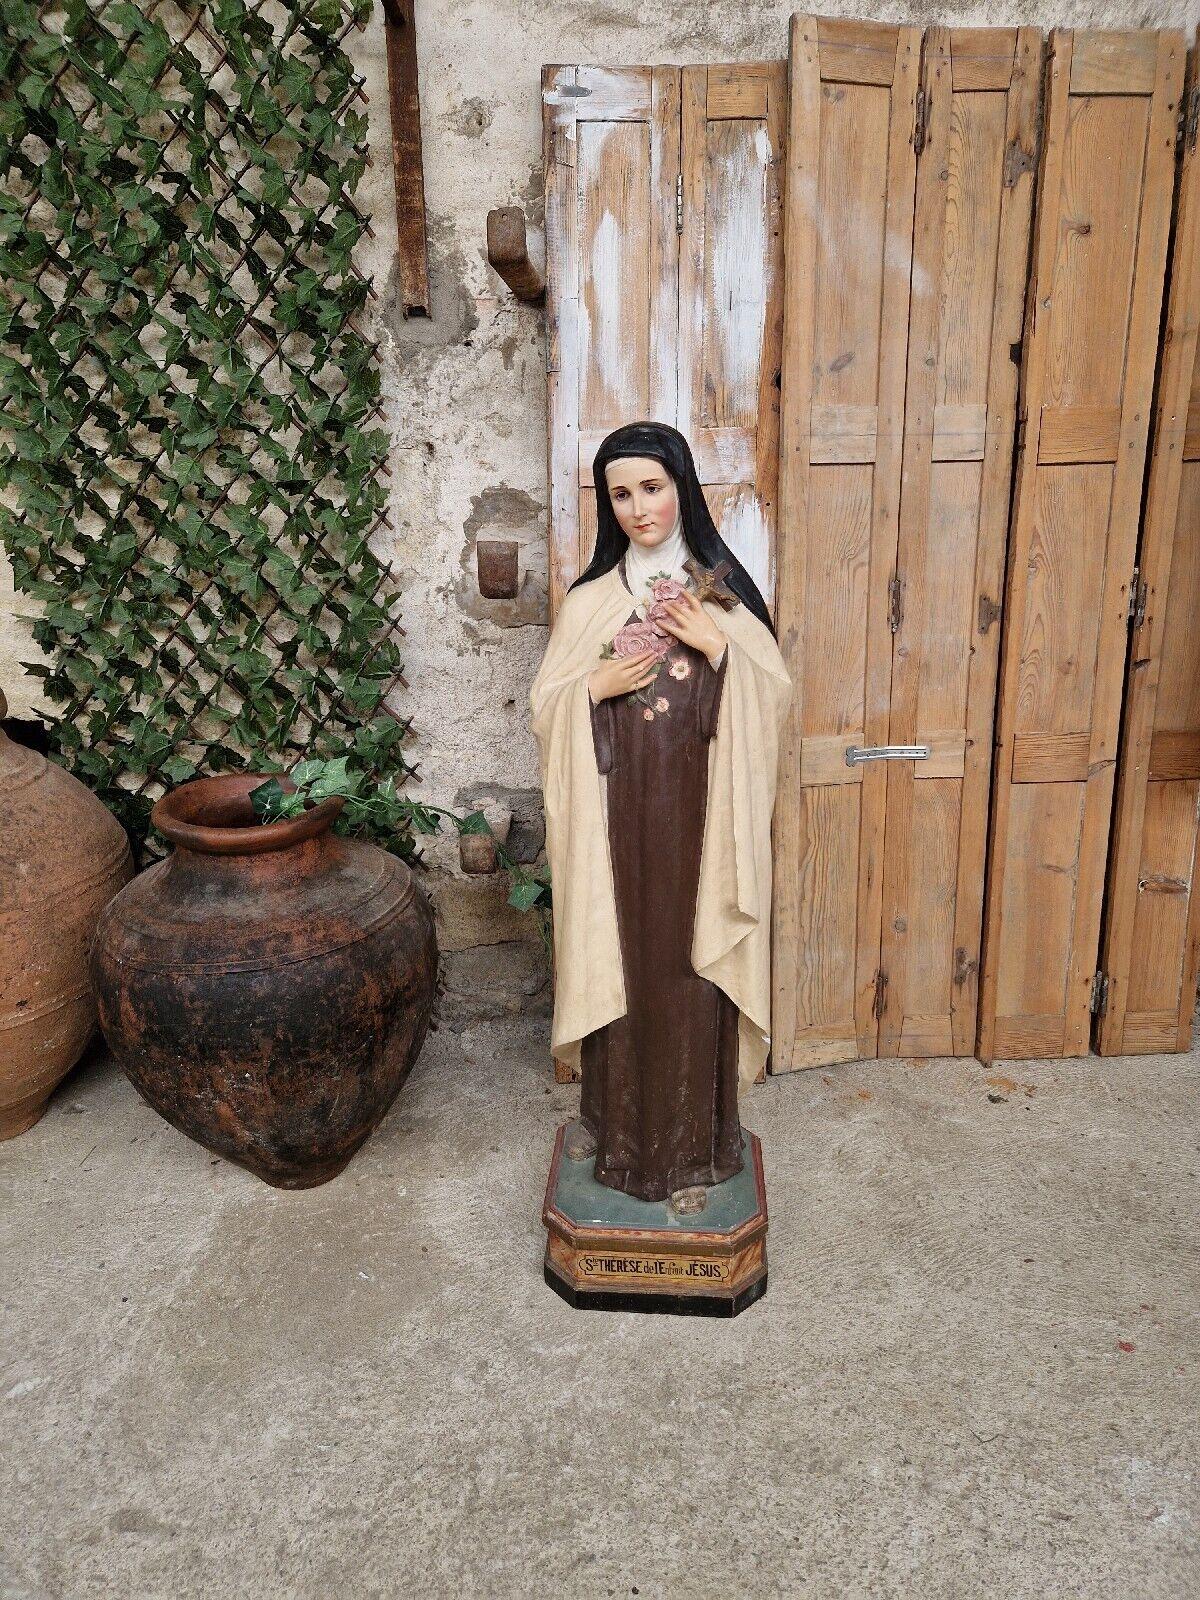 Diese fantastische große religiöse Skulptur der heiligen Thérèse von Lisieux ist aus lackiertem Gips und steht 135 cm hoch.

Der Gips wurde polychromiert, und auf dem Sockel der Statue sind die Worte St. Therese de l enfant Jesus

Französischer